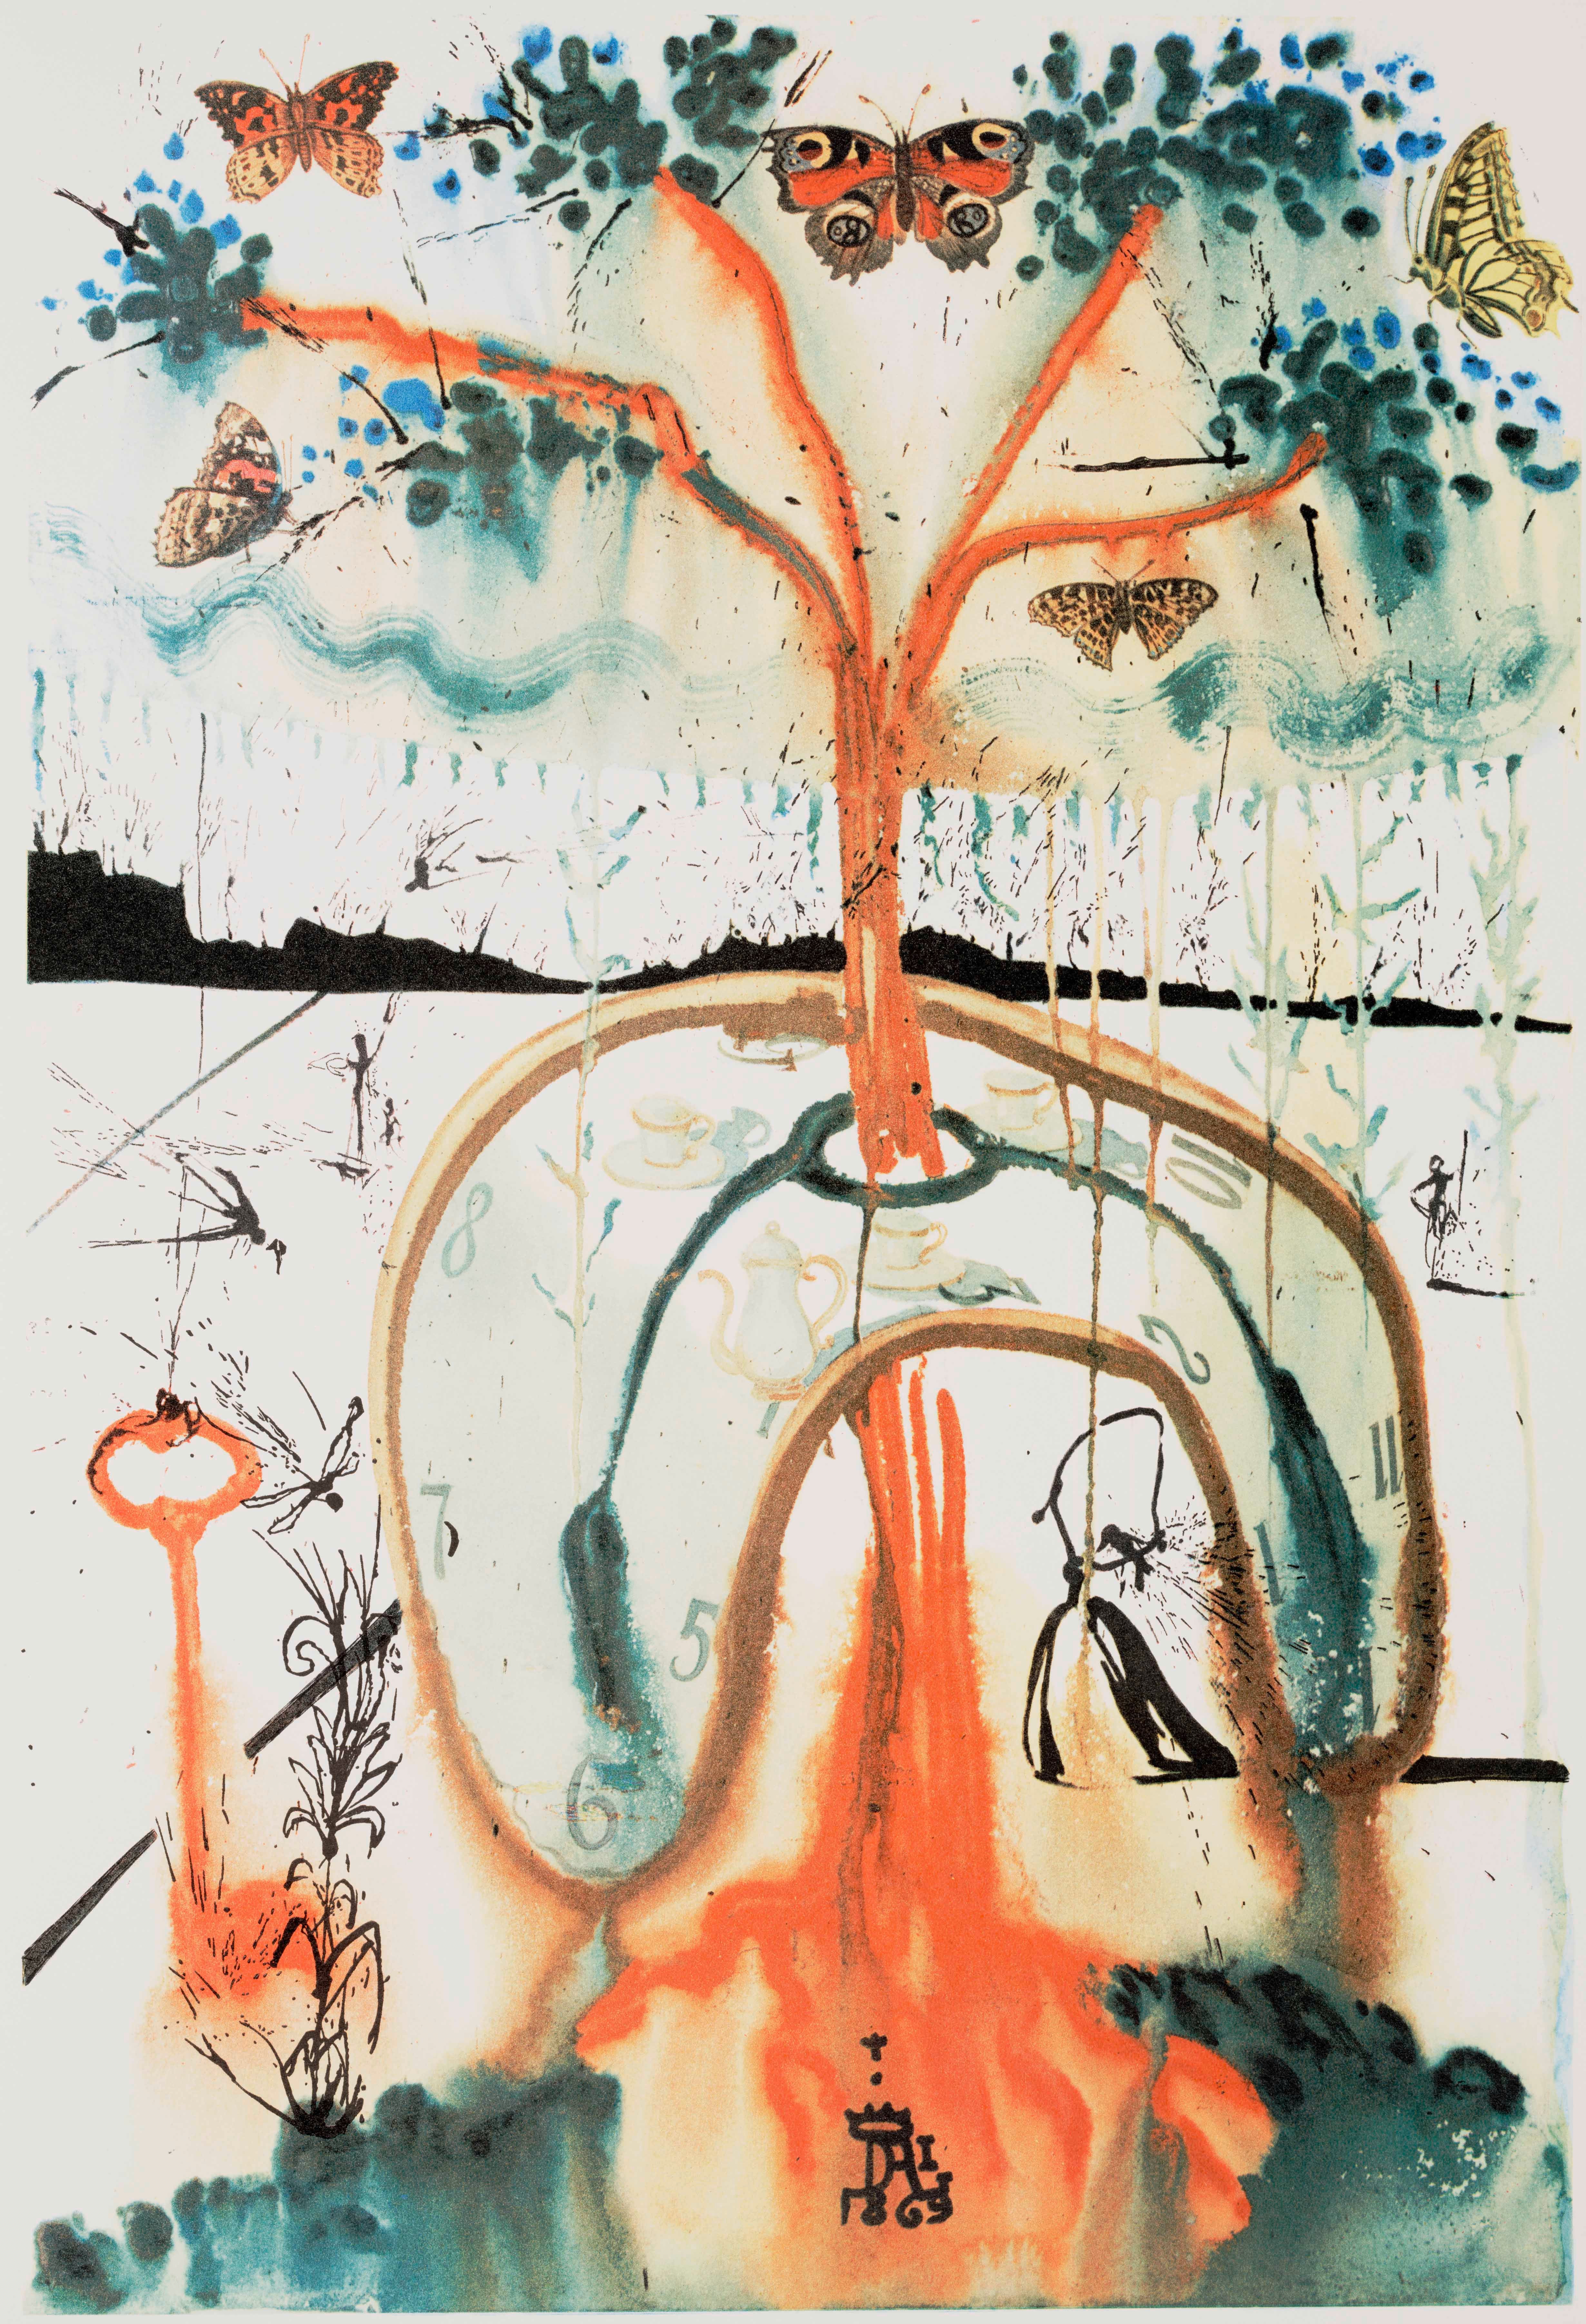 Salvador Dali, A Mad Tea Party, 1969